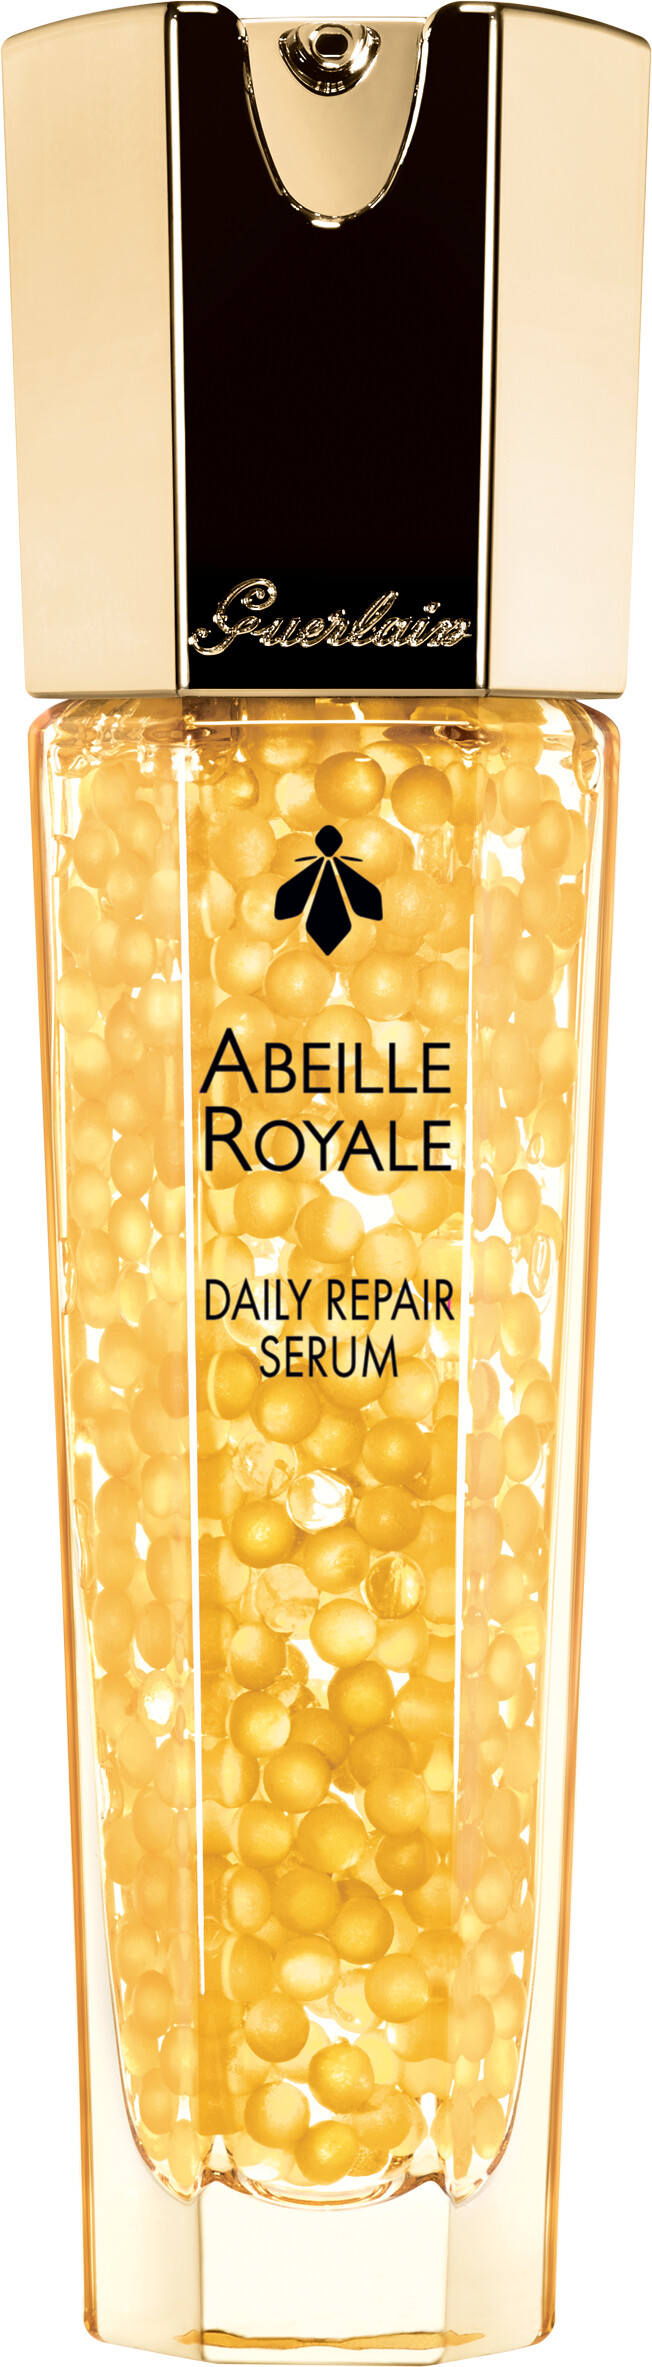 GUERLAIN Abeille Royale Daily Repair Serum 30ml